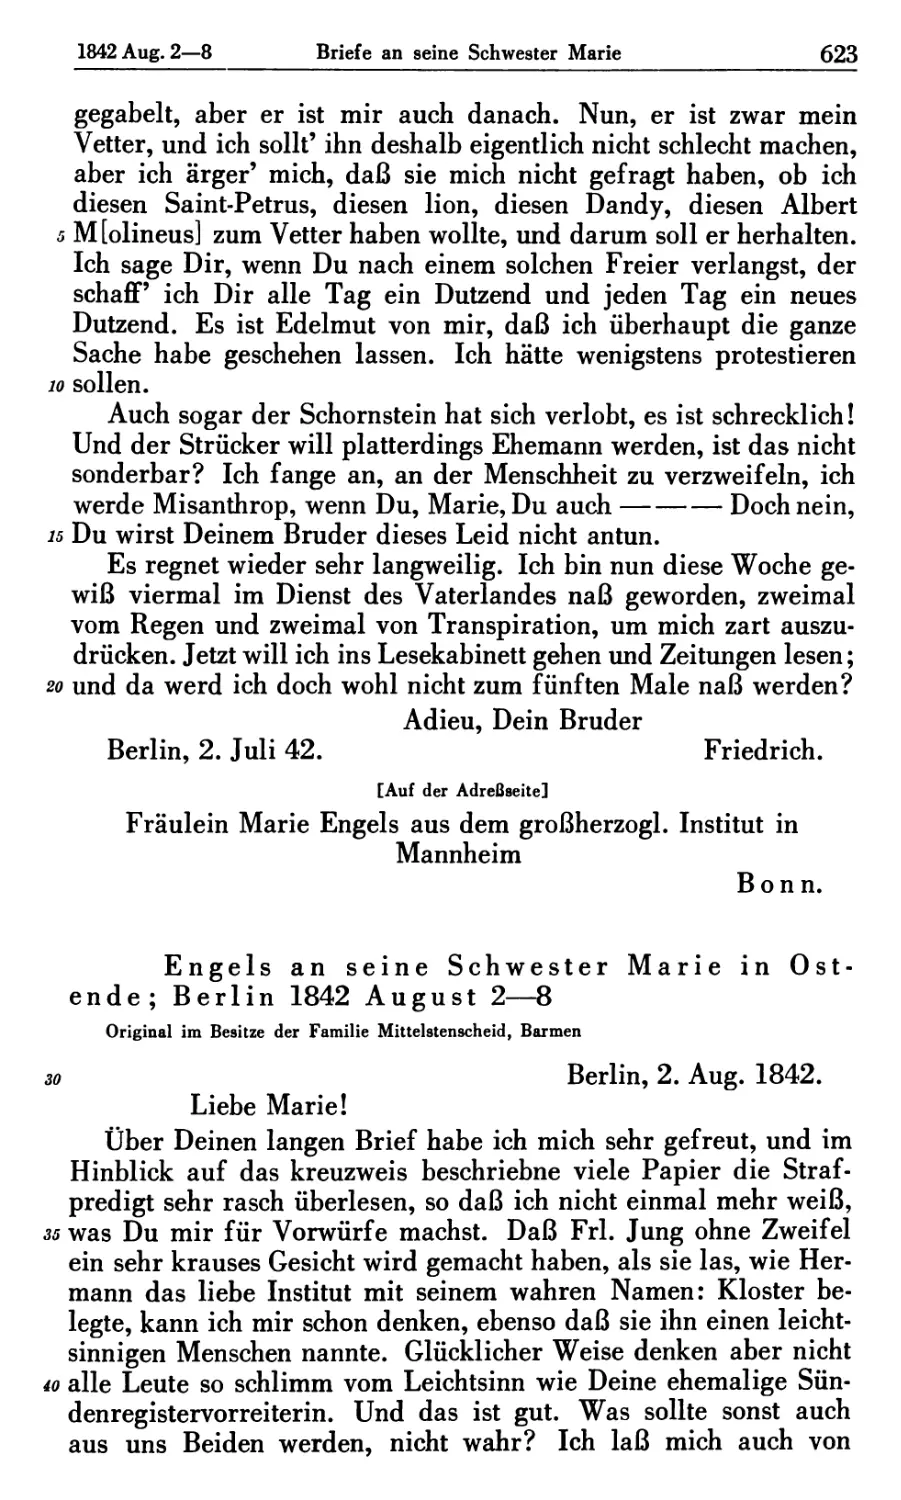 Engels an seine Schwester Marie in Ostende; Berlin 1842 August 2-8